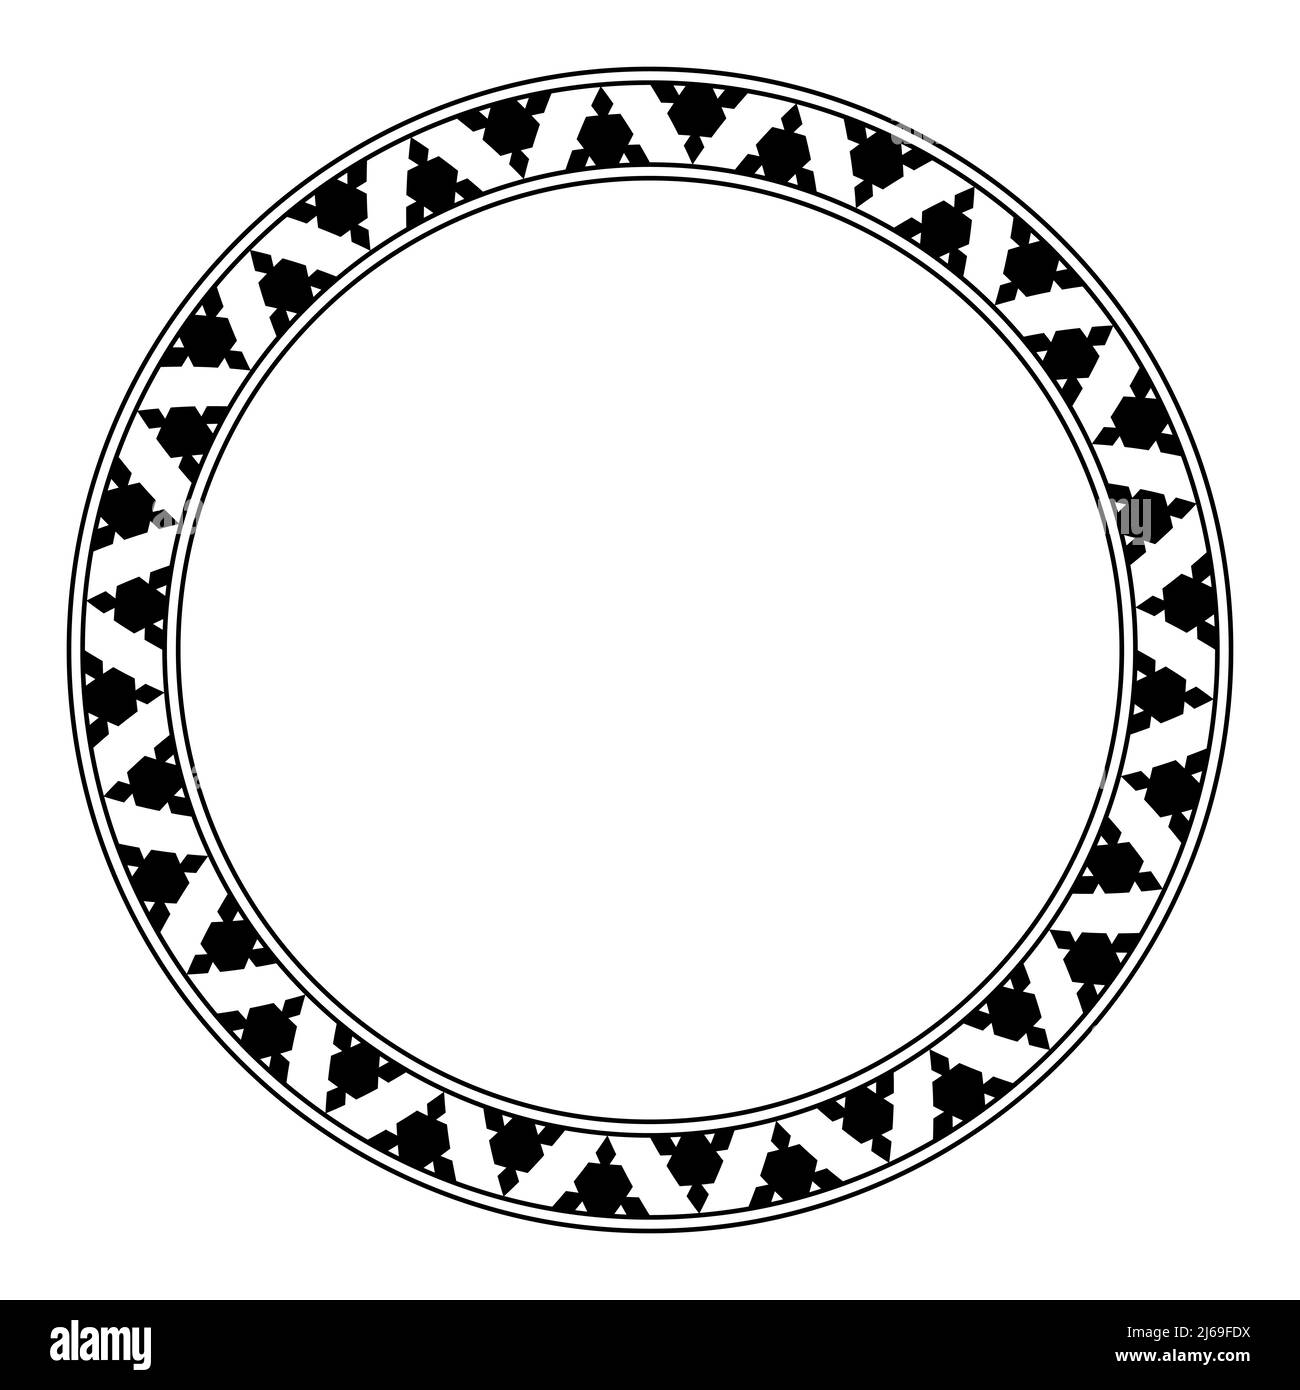 Gezahntes Dreiecksmuster in einem Kreisrahmen. Schwarze Dreiecke, abwechselnd angeordnet, mit ausgeschnittenen Bereichen, ergeben ein gezacktes Muster. Stockfoto